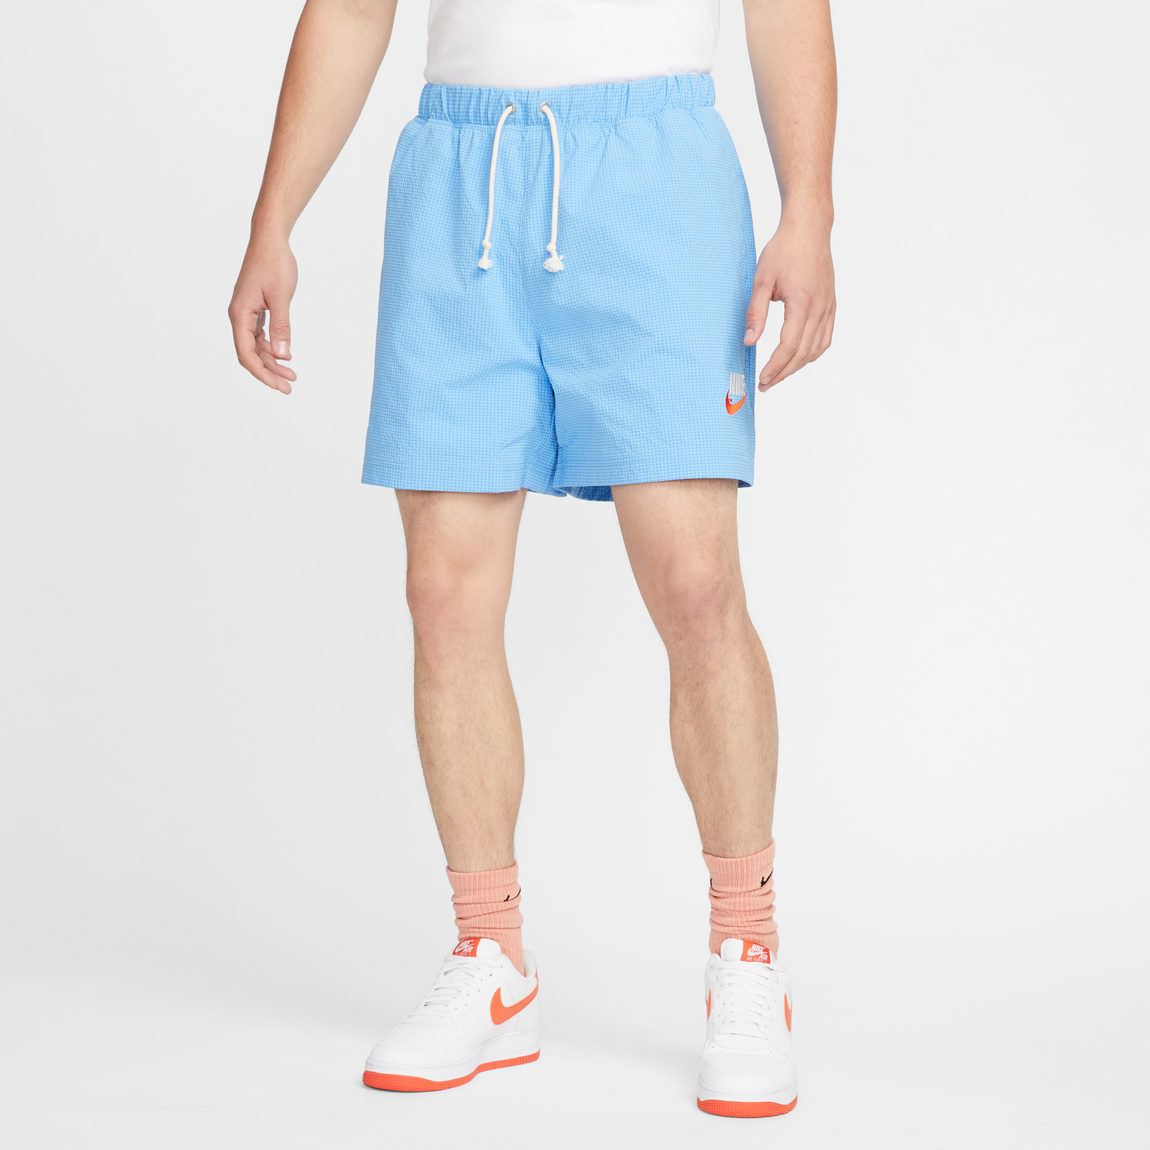 Nike Sportswear Lined Woven Shorts (University Blue) - Nike Sportswear Lined Woven Shorts (University Blue) - 